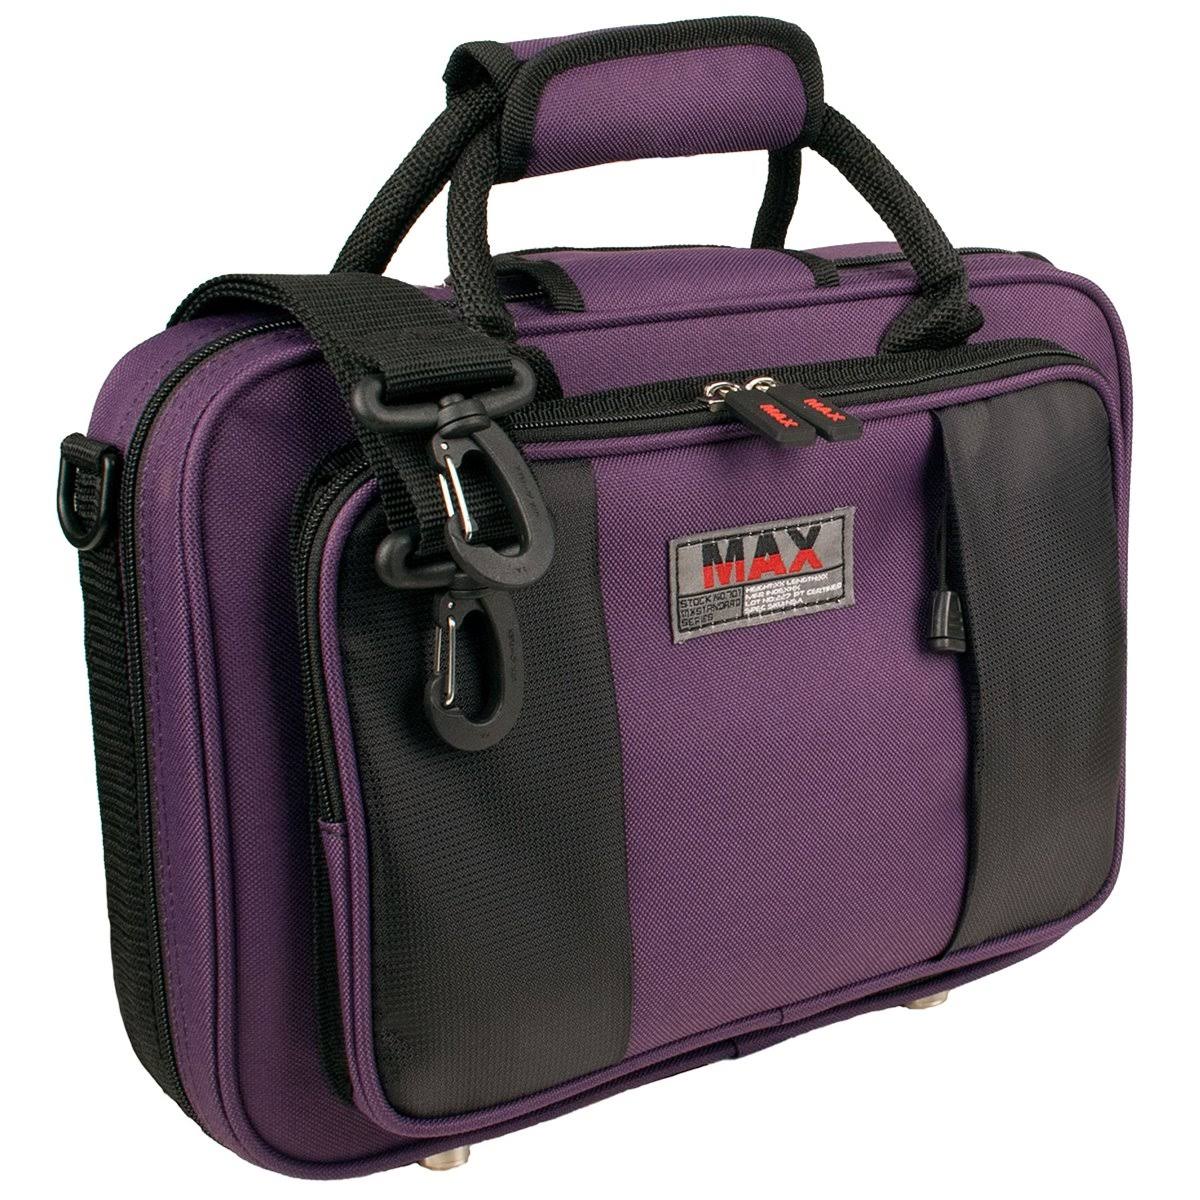 Protec Max BB Clarinet Case - Purple - Musical Instrument Cases